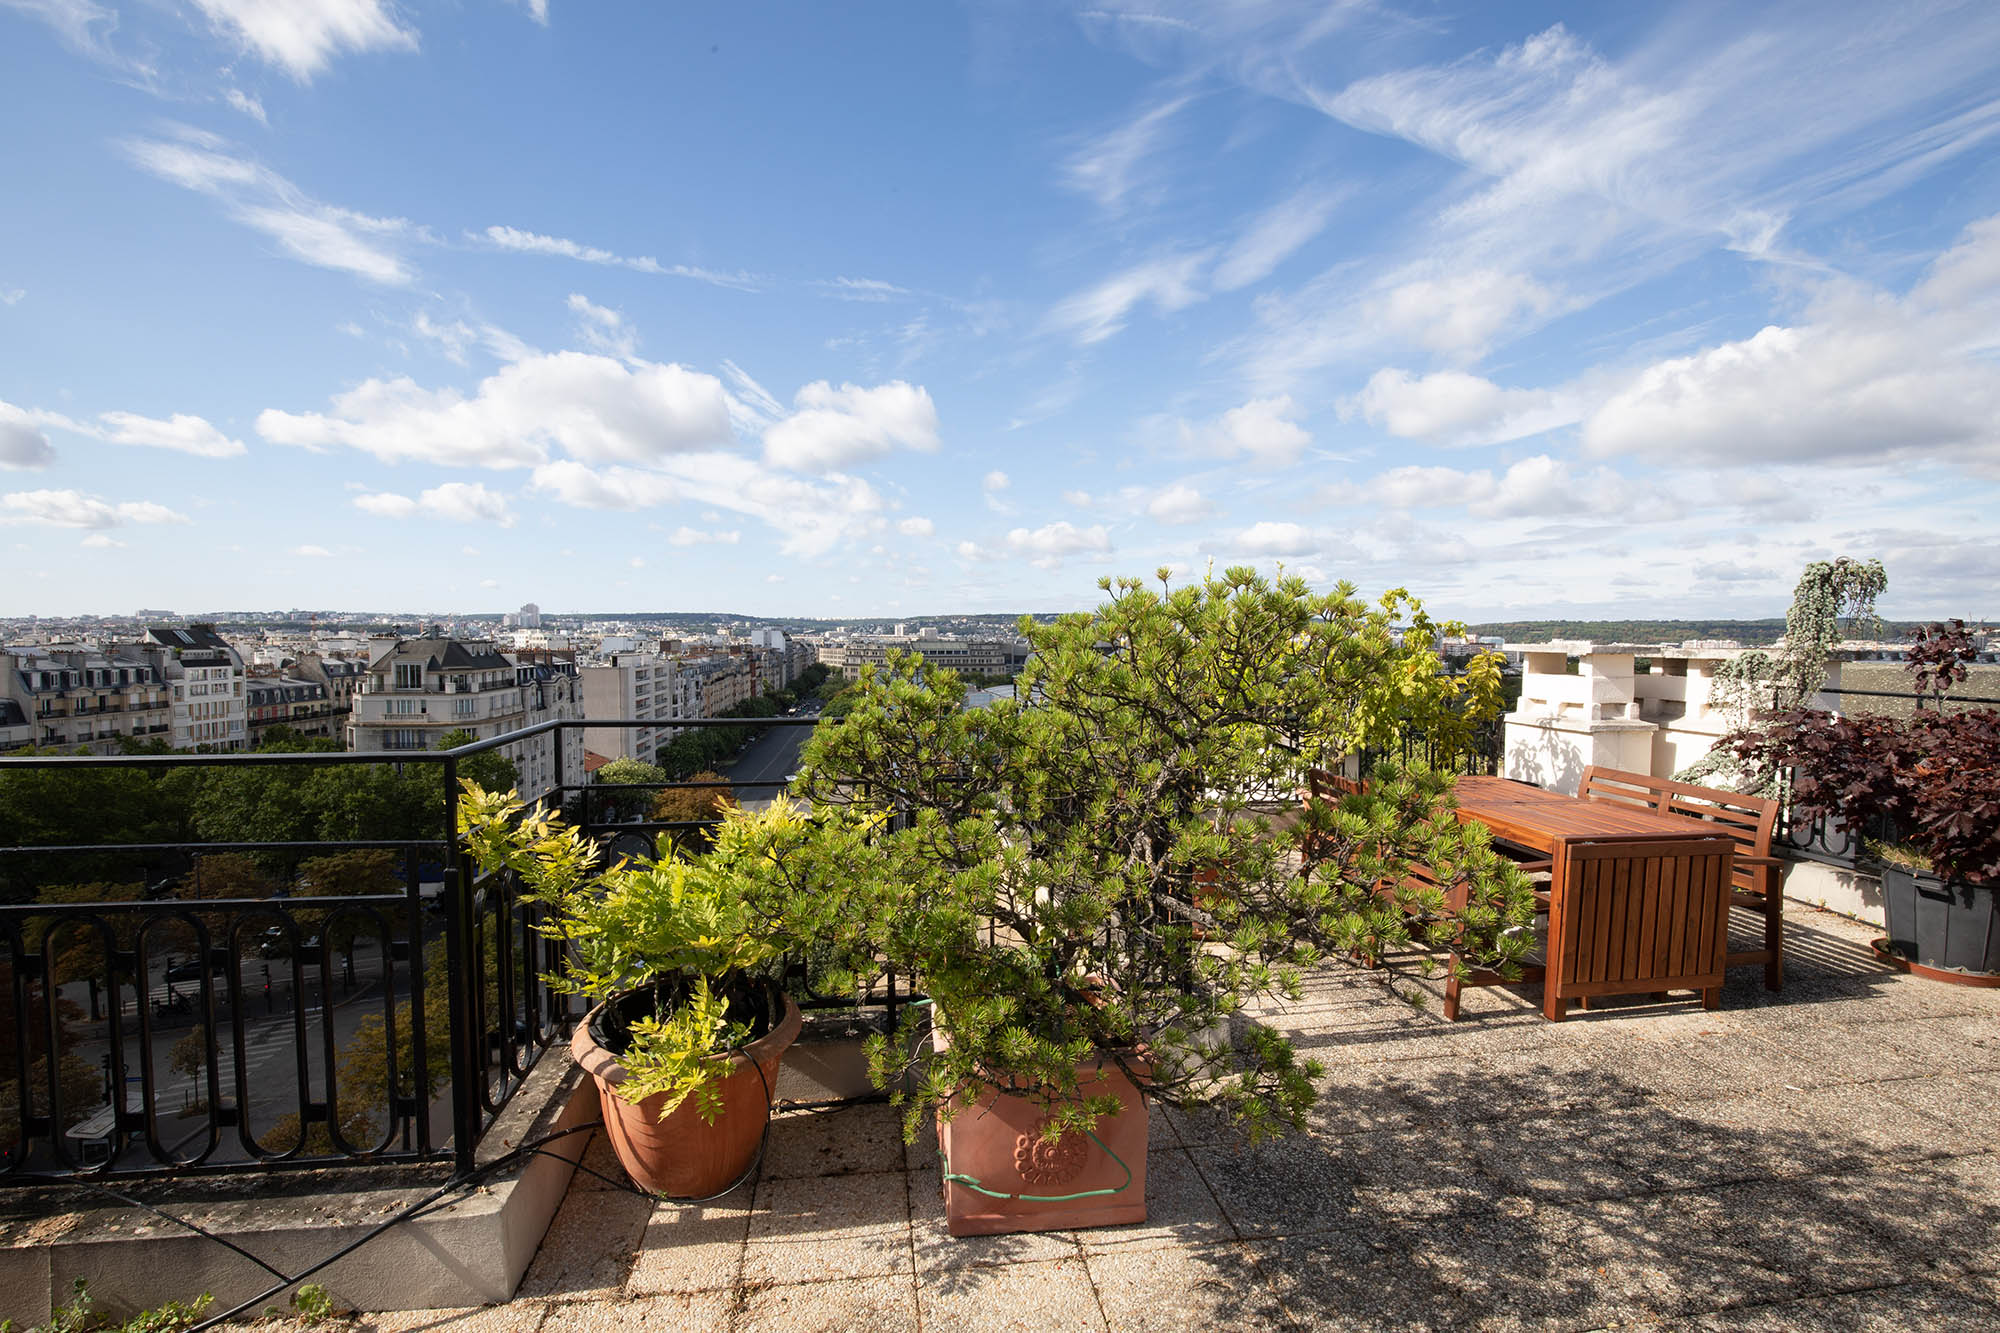 appartement dernier etage paris 16ème Auteuil vue degagee terrasse